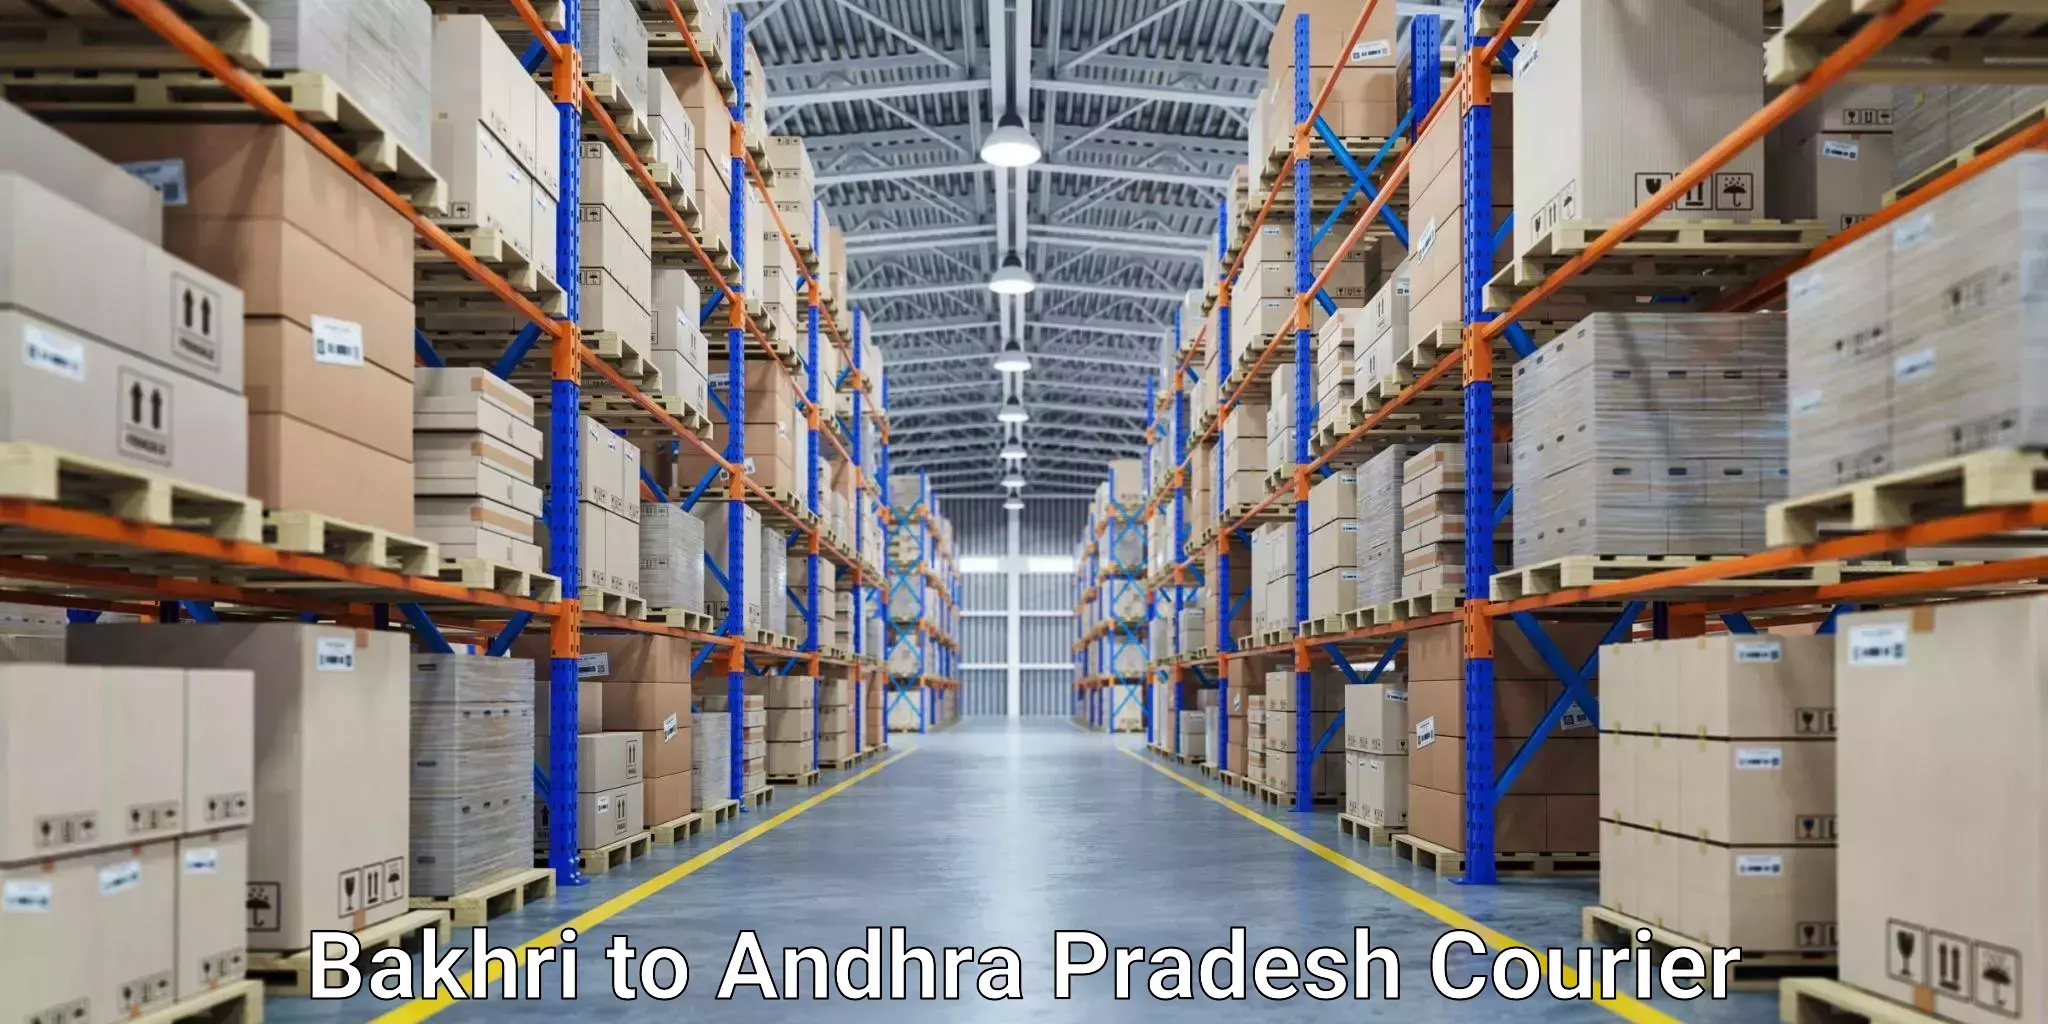 24-hour courier service Bakhri to Andhra Pradesh